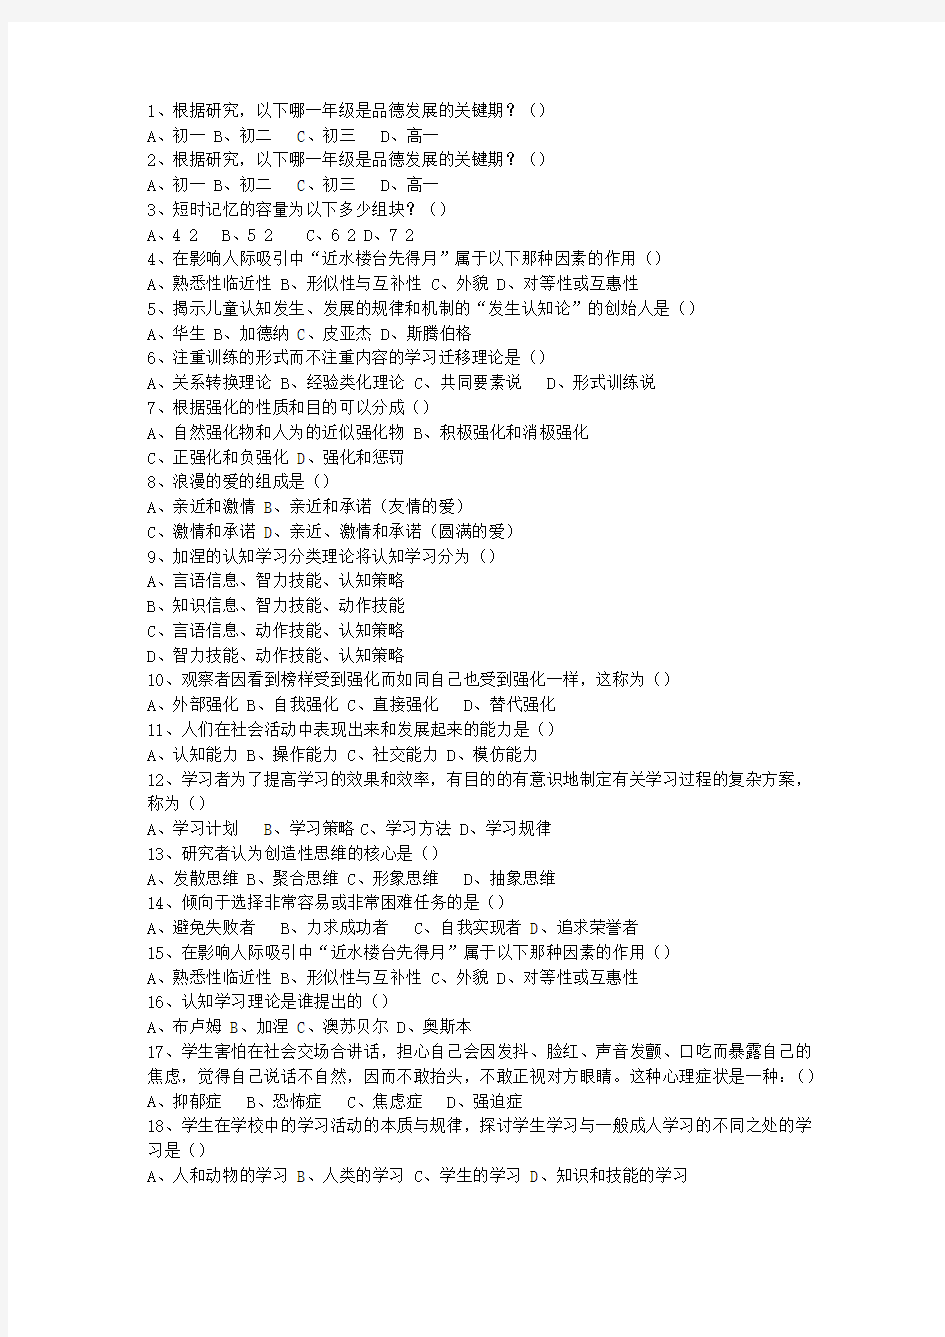 2013香港特别行政区教师资格证考试题库